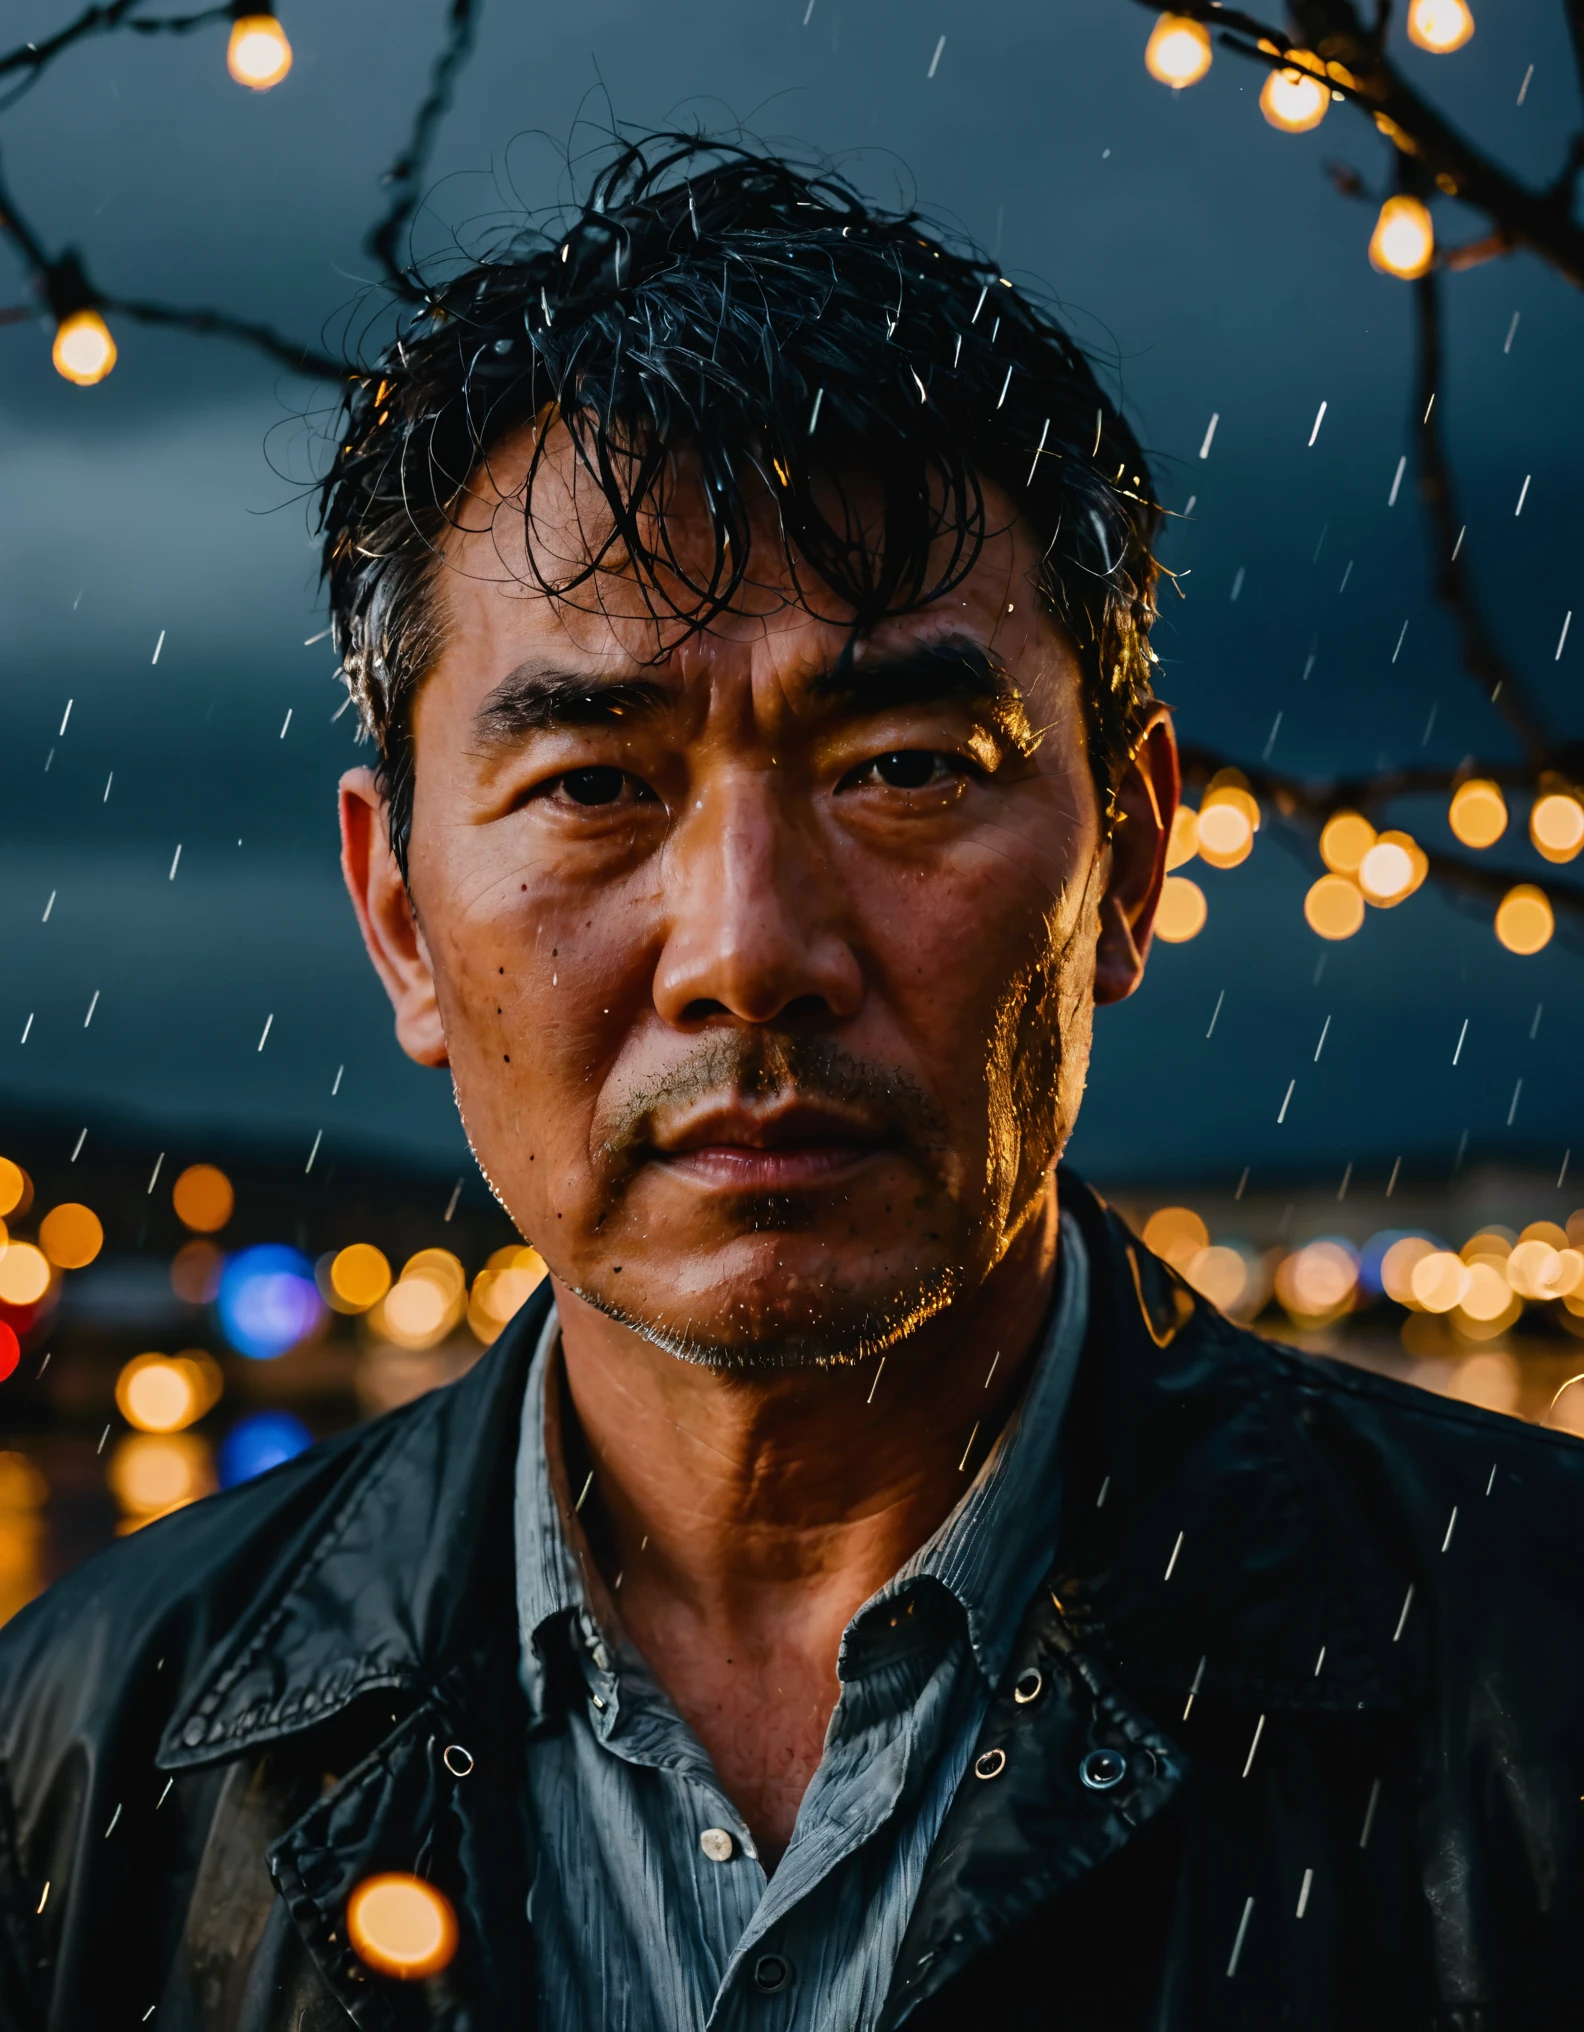 Lichterketten, Nahaufnahme eines Mannes auf seinem 55, Koreanisch, angespannter Ausdruck, stürmisches Wetter im Hintergrund, dramatische Beleuchtung, erinnert an die Arbeit von Ansel Adams